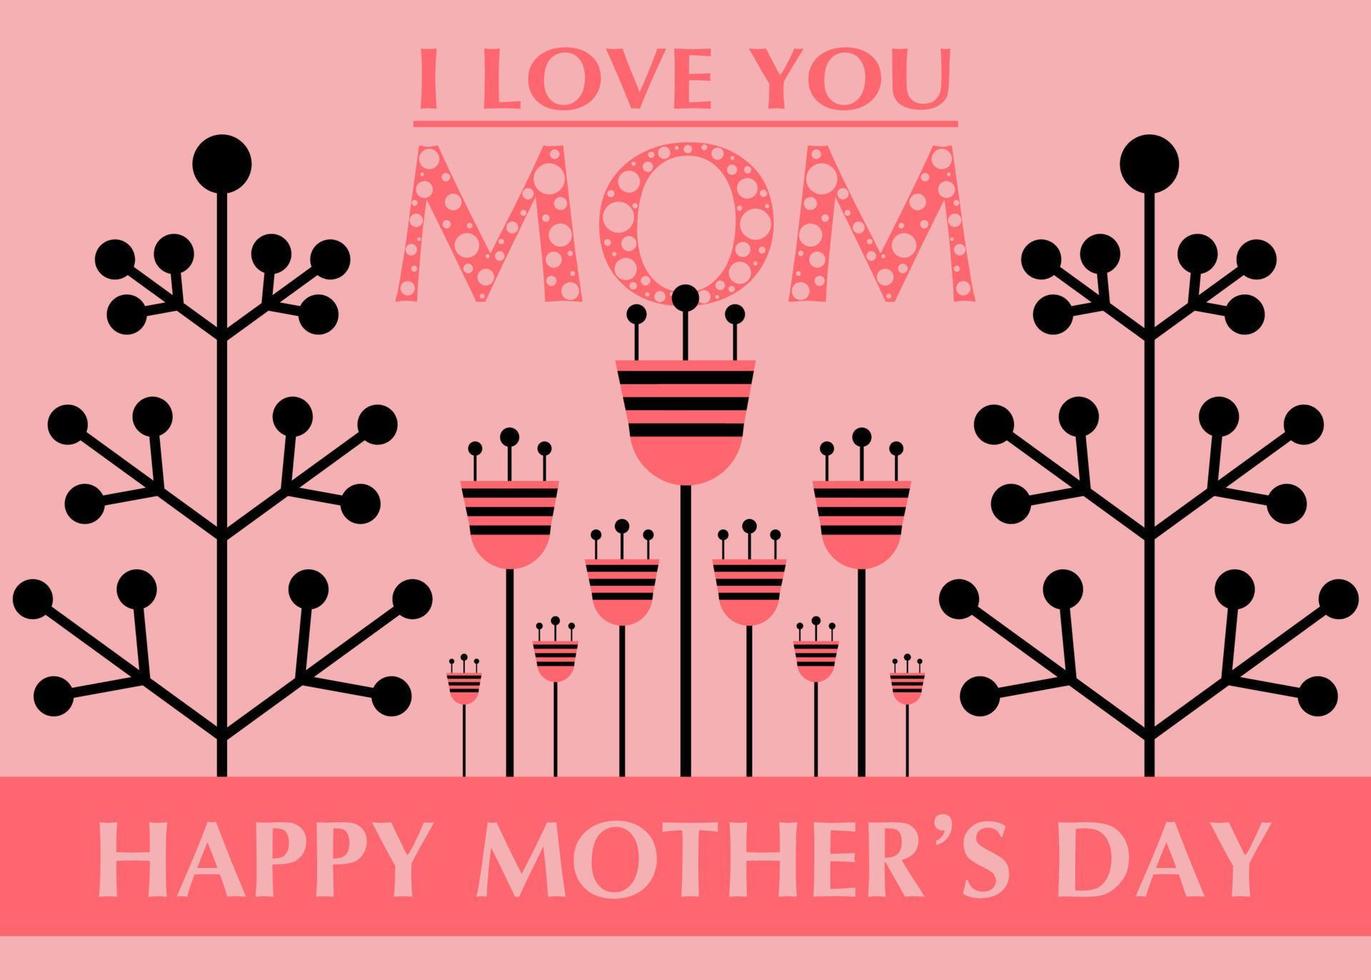 cartão de dia das mães com flores de estilo minimalista e letras feliz dia das mães. cartão, post ou banner rosa e preto. cartão de felicitações para a mãe. ilustração vetorial isolada vetor